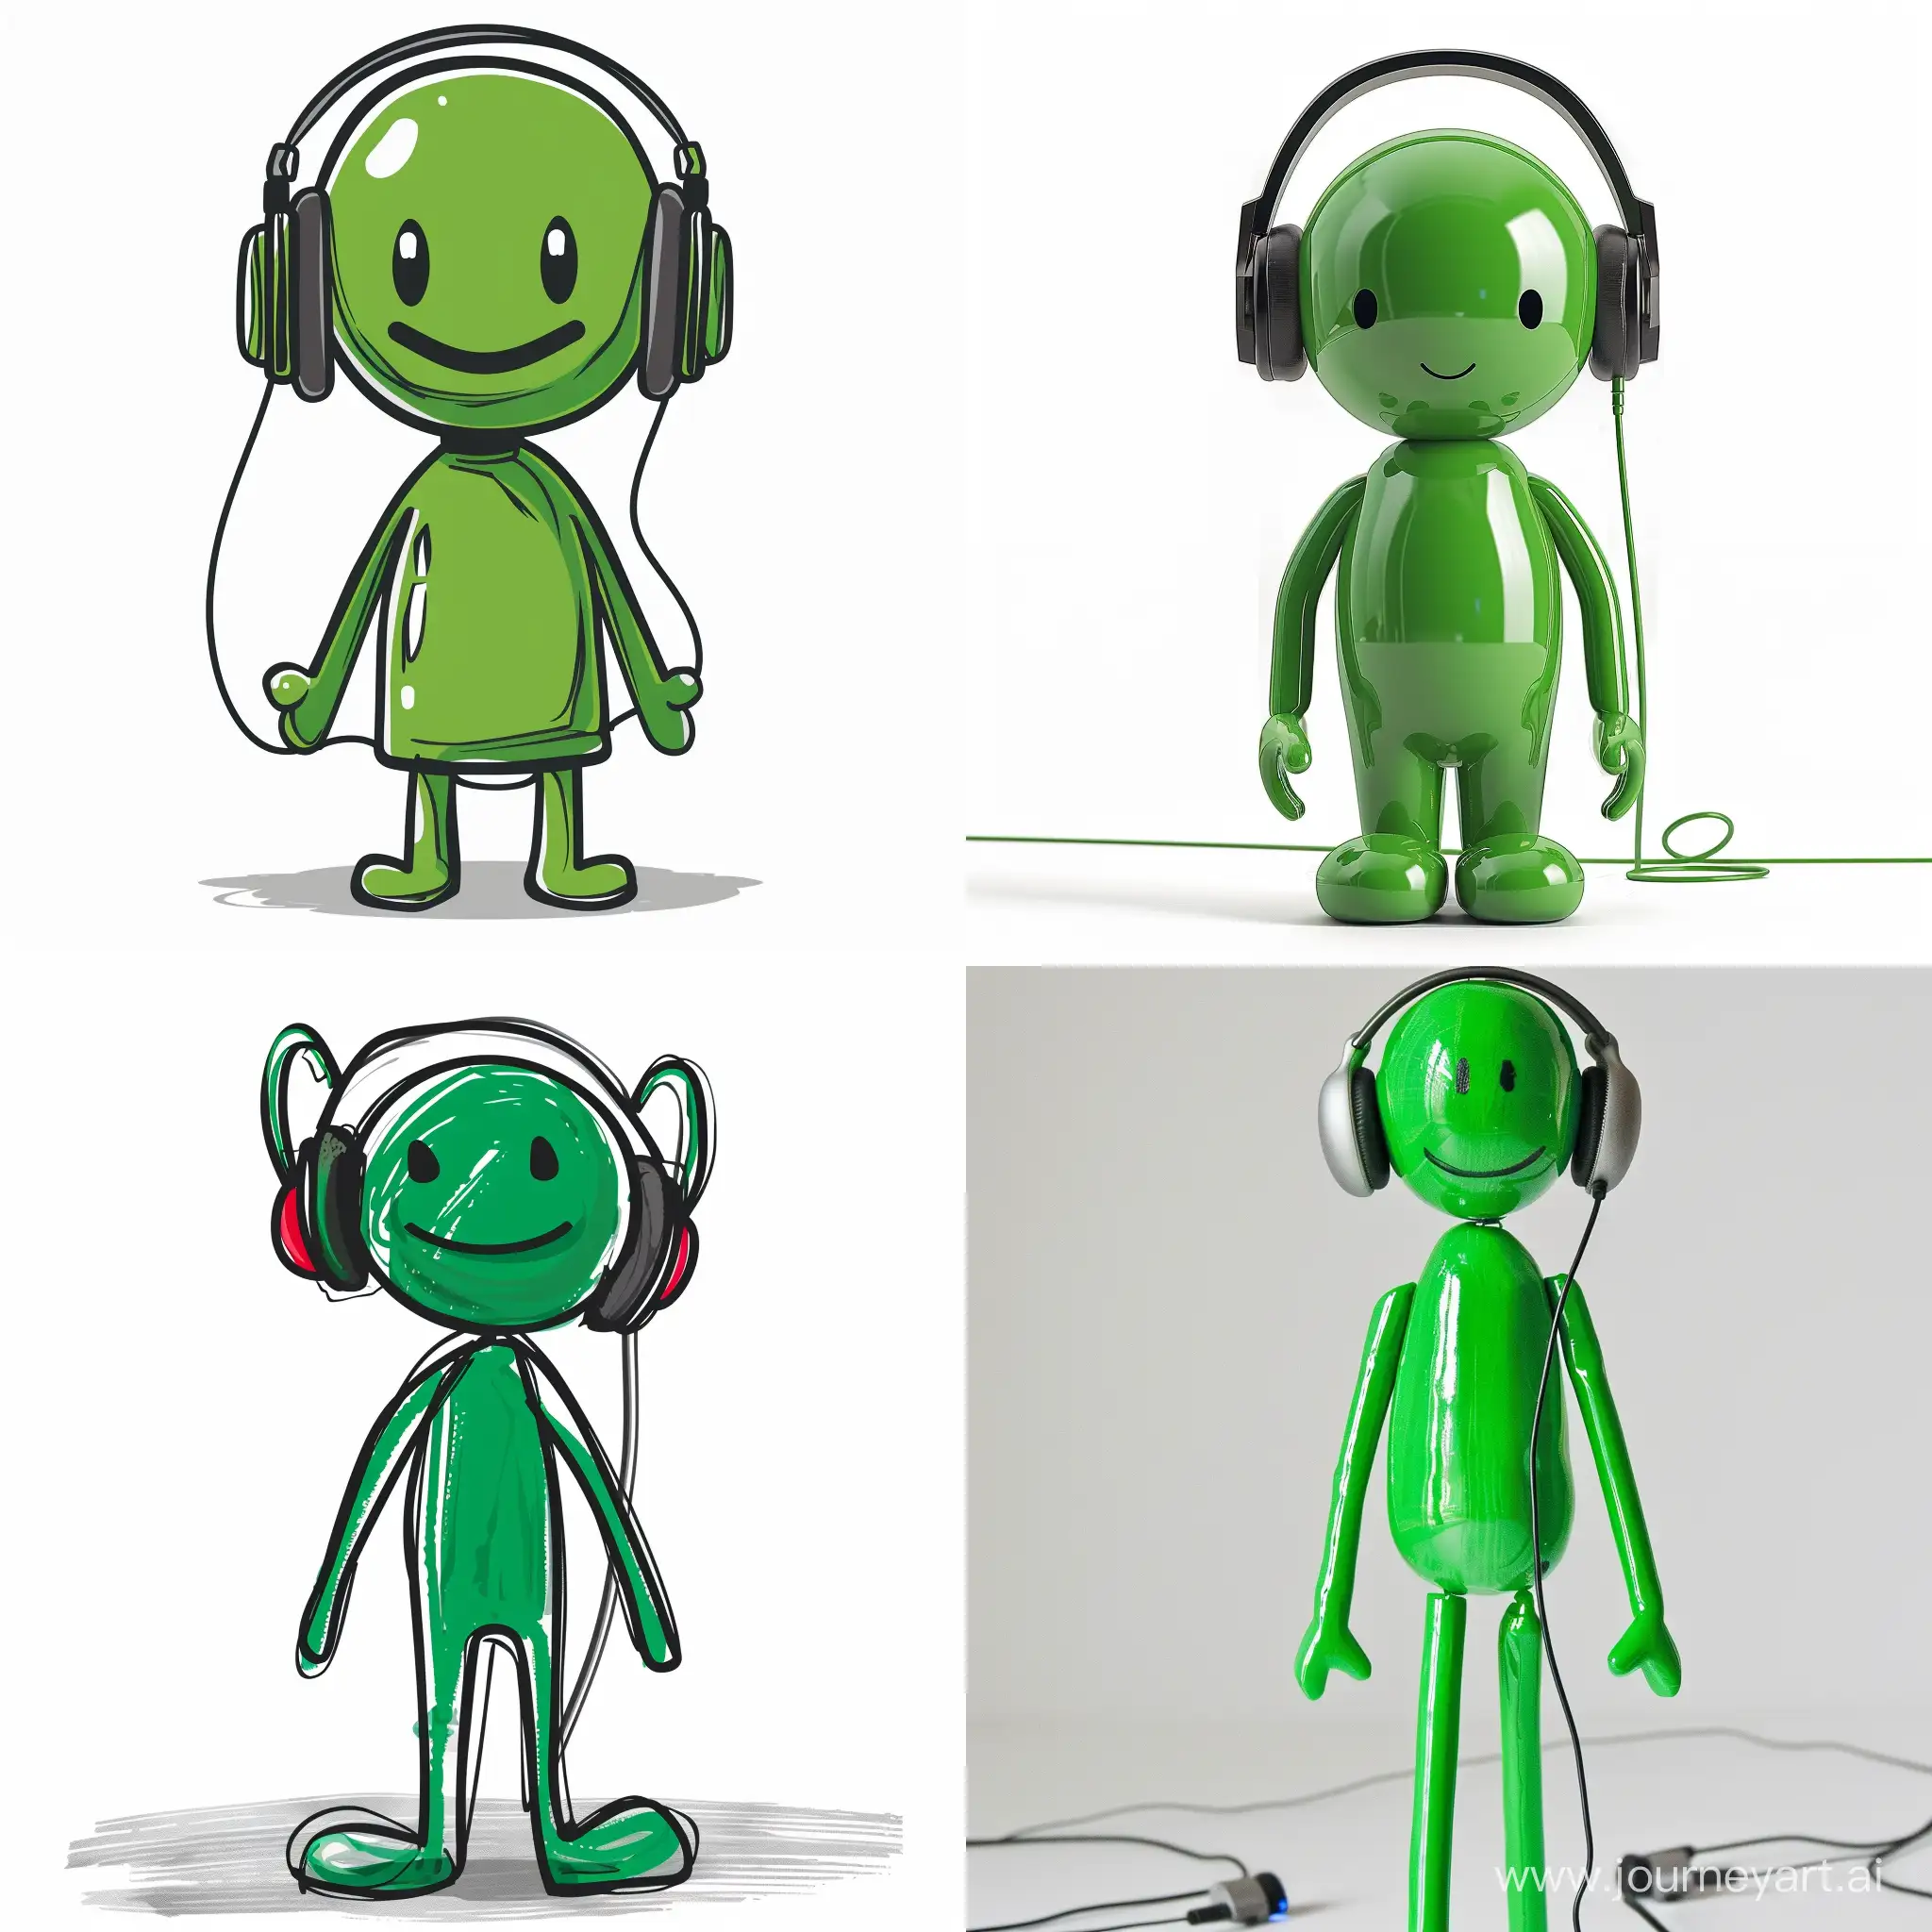 green stickman wearing headphones